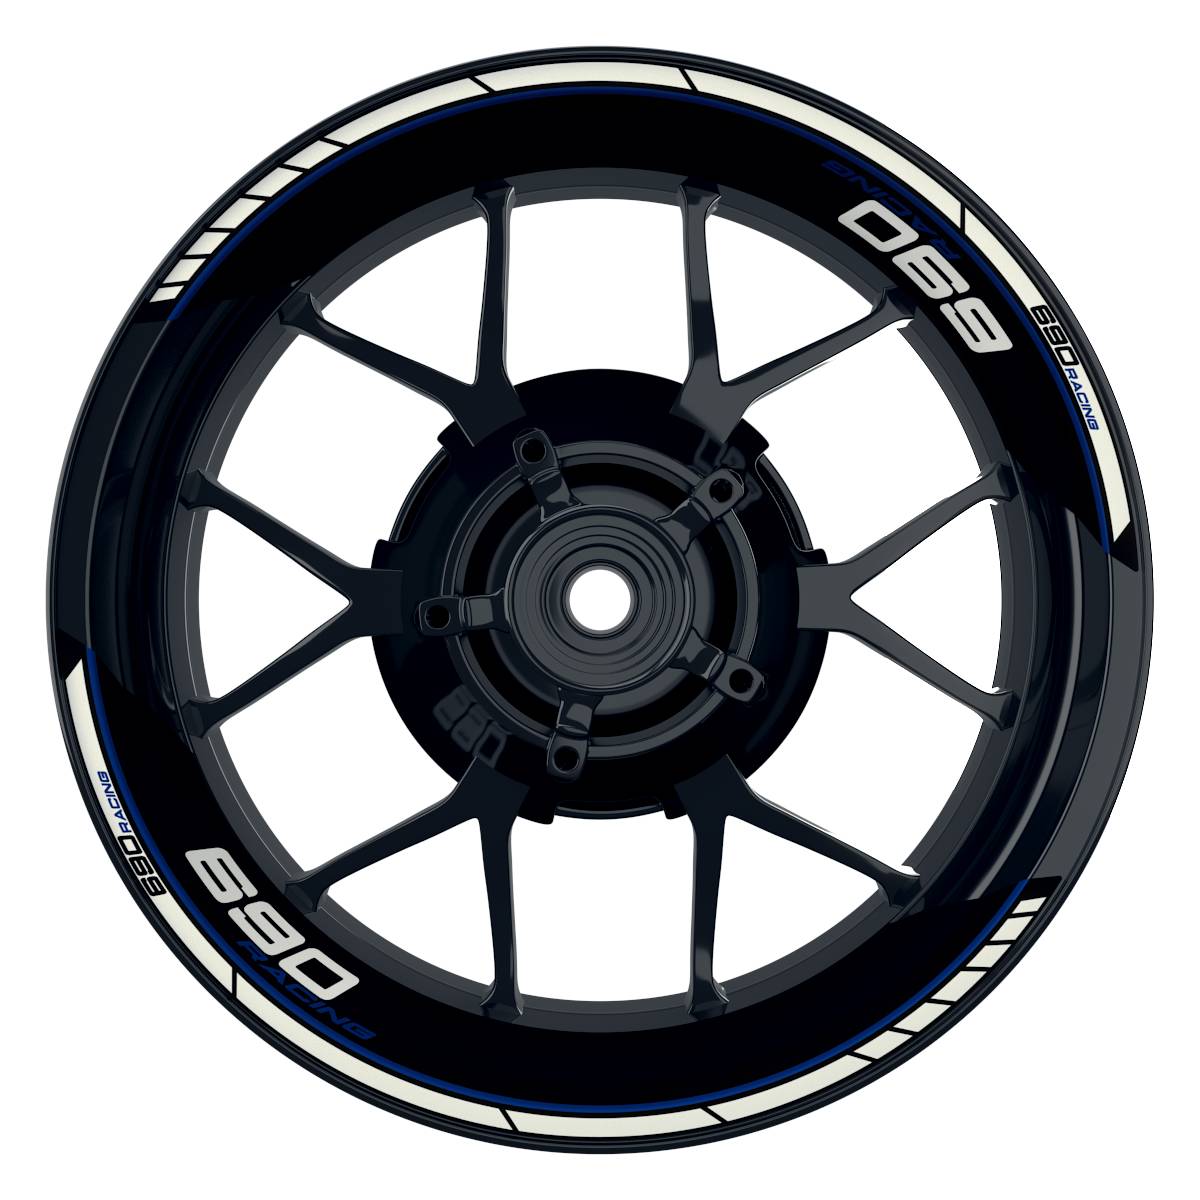 KTM Racing 690 Clean schwarz blau Frontansicht